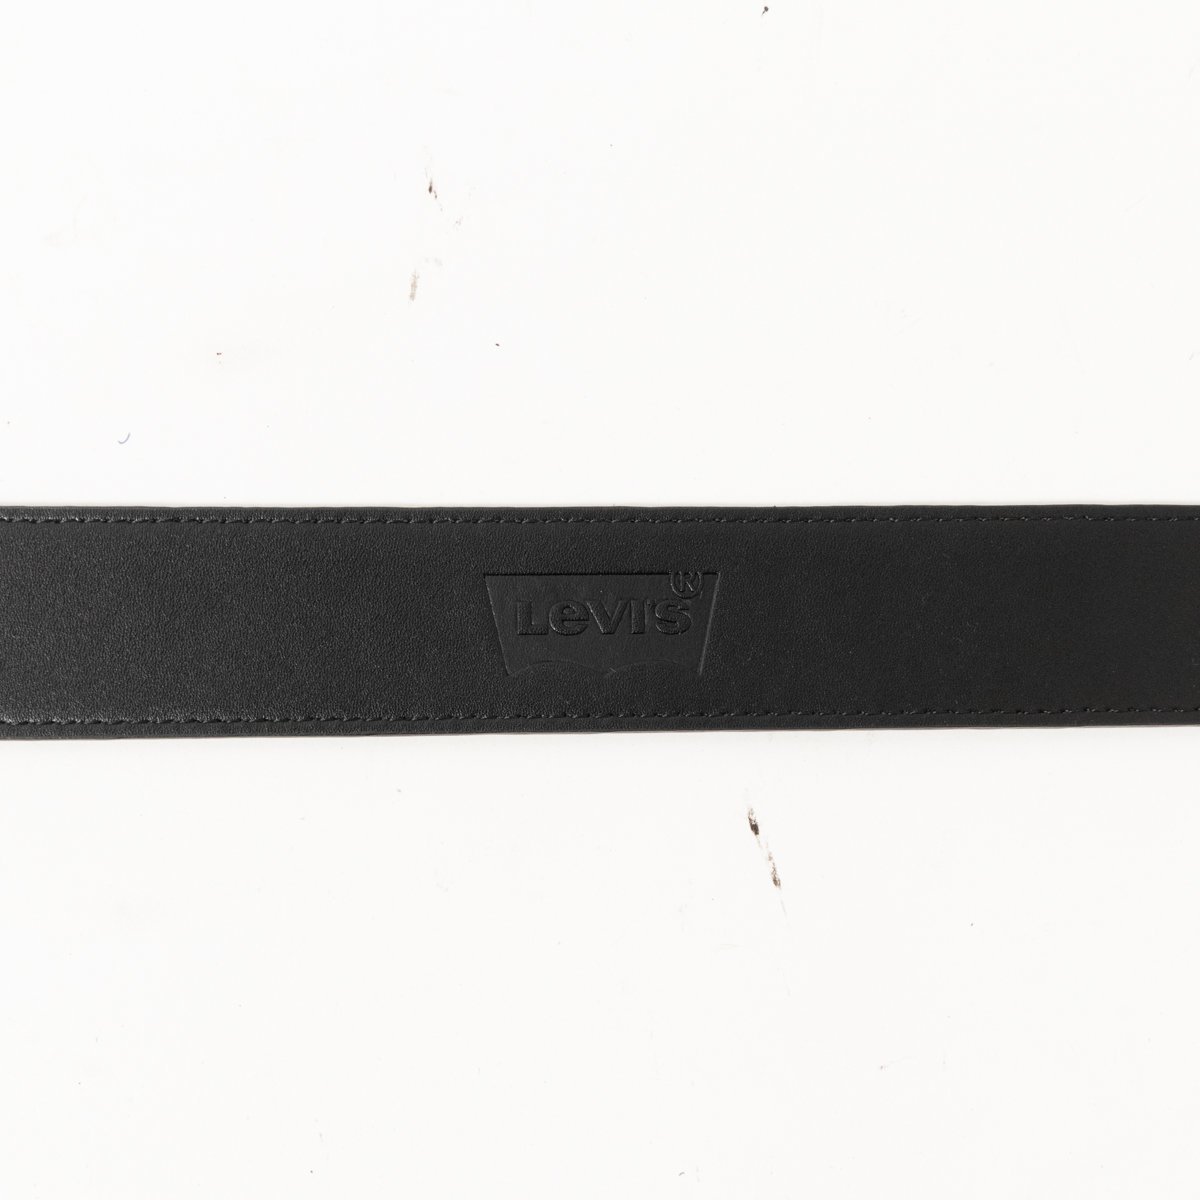 Levi's リーバイス ベルト 5穴 レザー調 ブラック 黒系 シルバー金具 ロゴ刻印 カジュアル アメカジ シンプル メンズ 紳士 男性 服飾小物_画像8